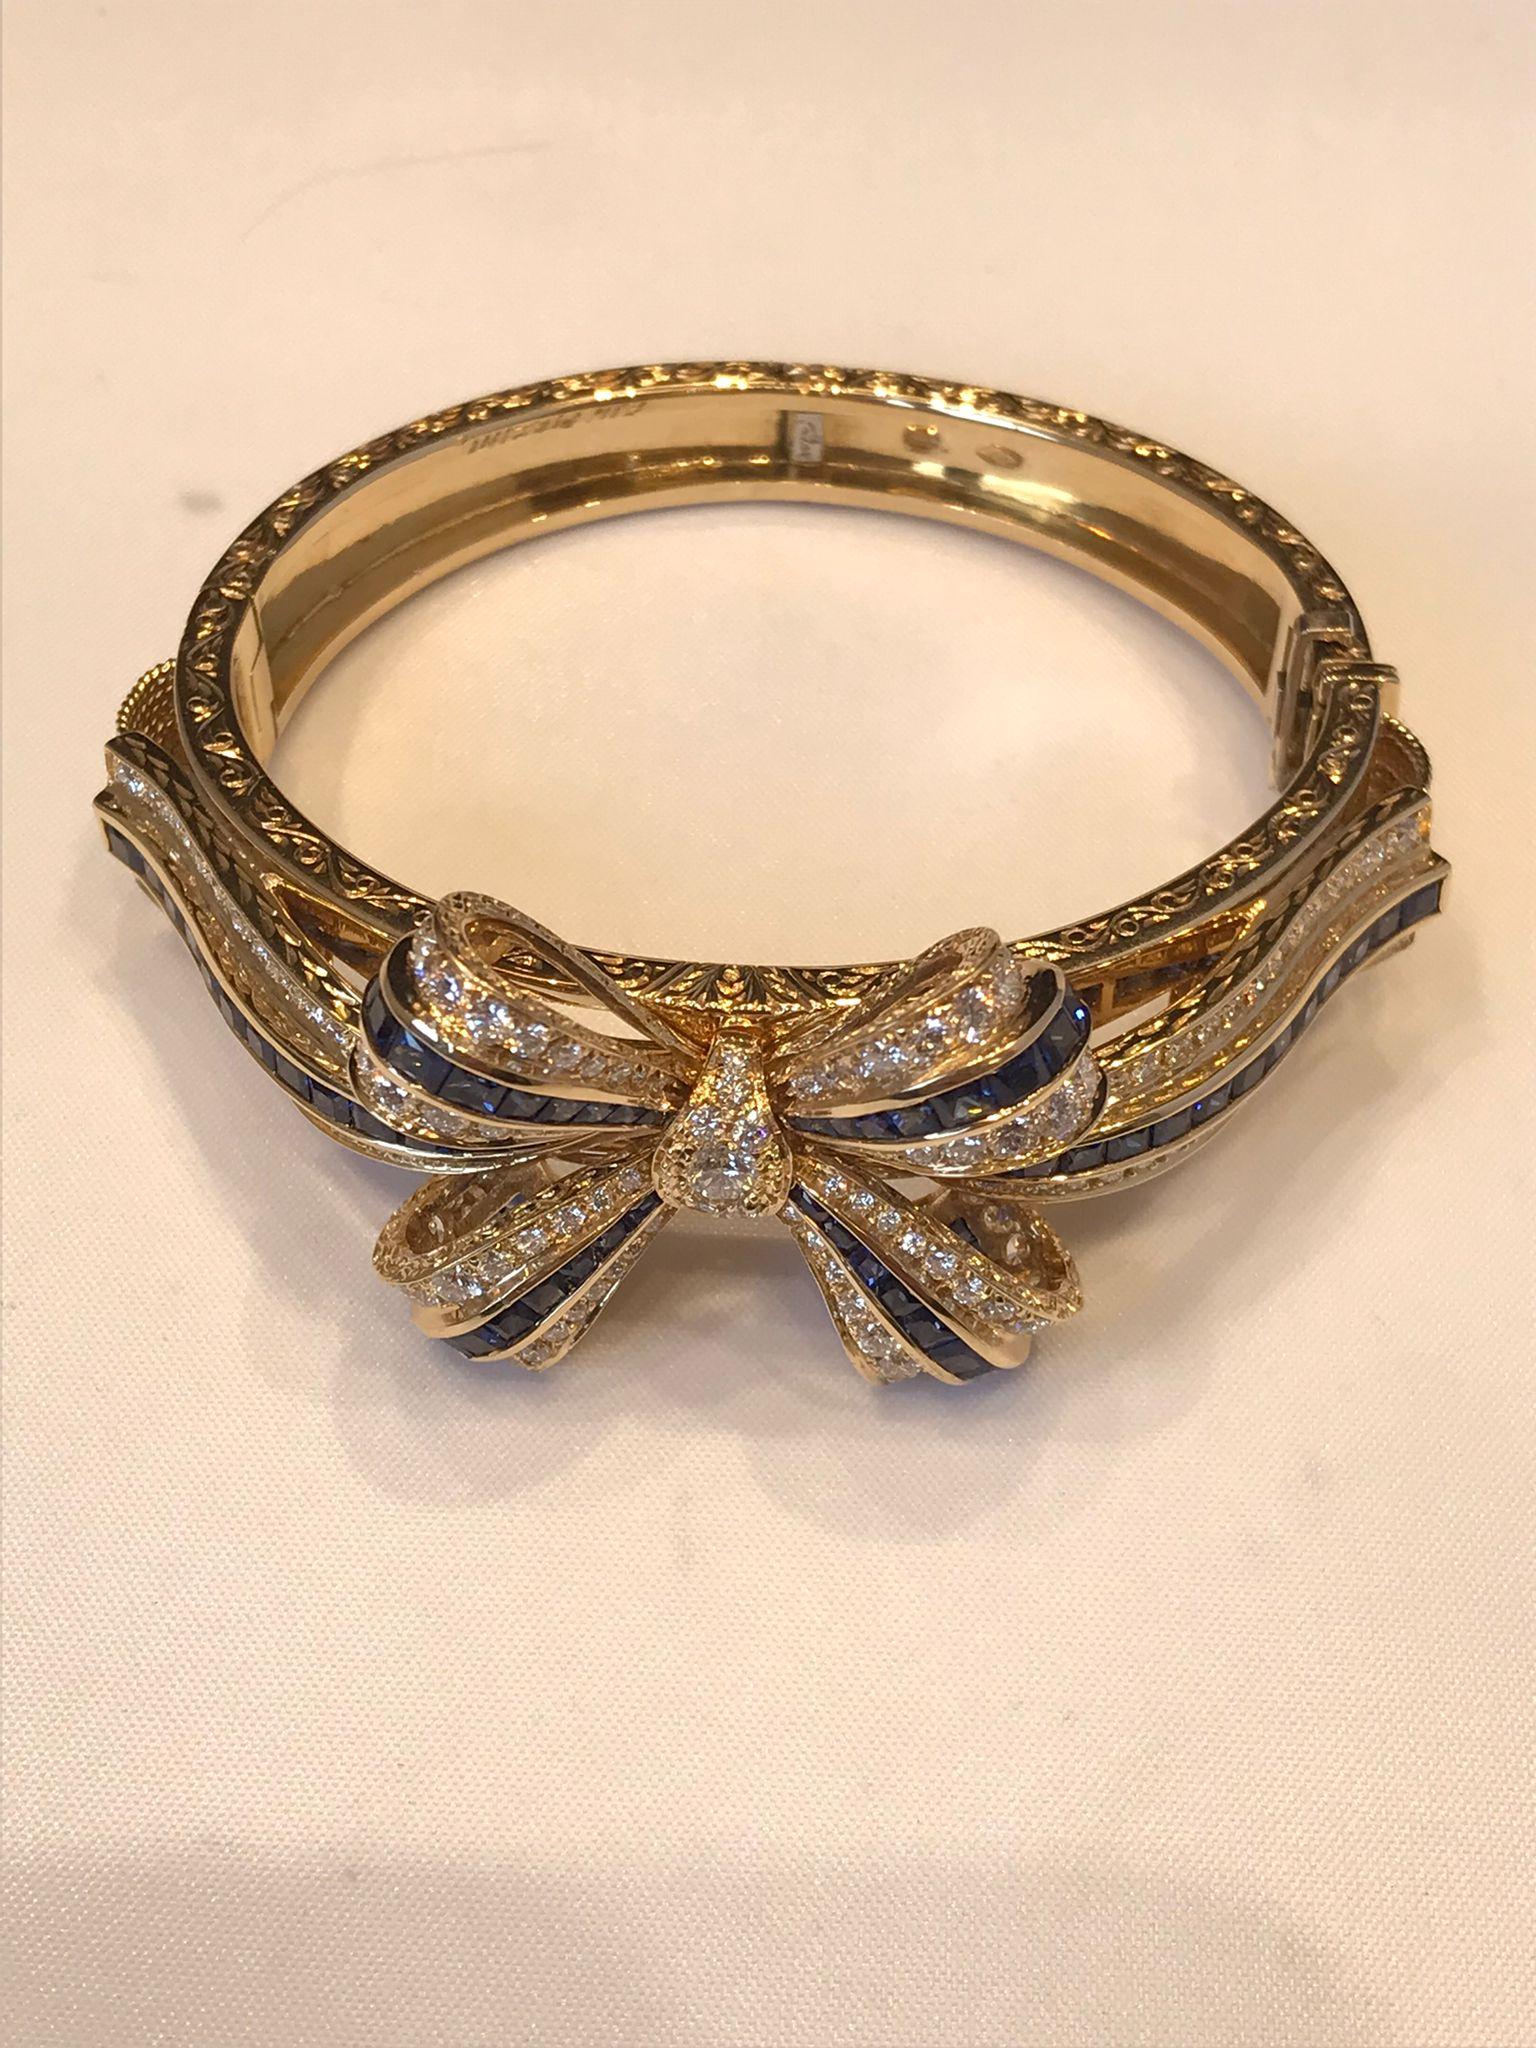 bracelet en or jaune 18KT avec saphirs et diamants.

Conçu par Armando Piccini, le bracelet RIBBON englobe et met en valeur les techniques de l'artisanat. Gravé à la main de façon magistrale, en or 18KT avec des diamants et des saphirs carrés